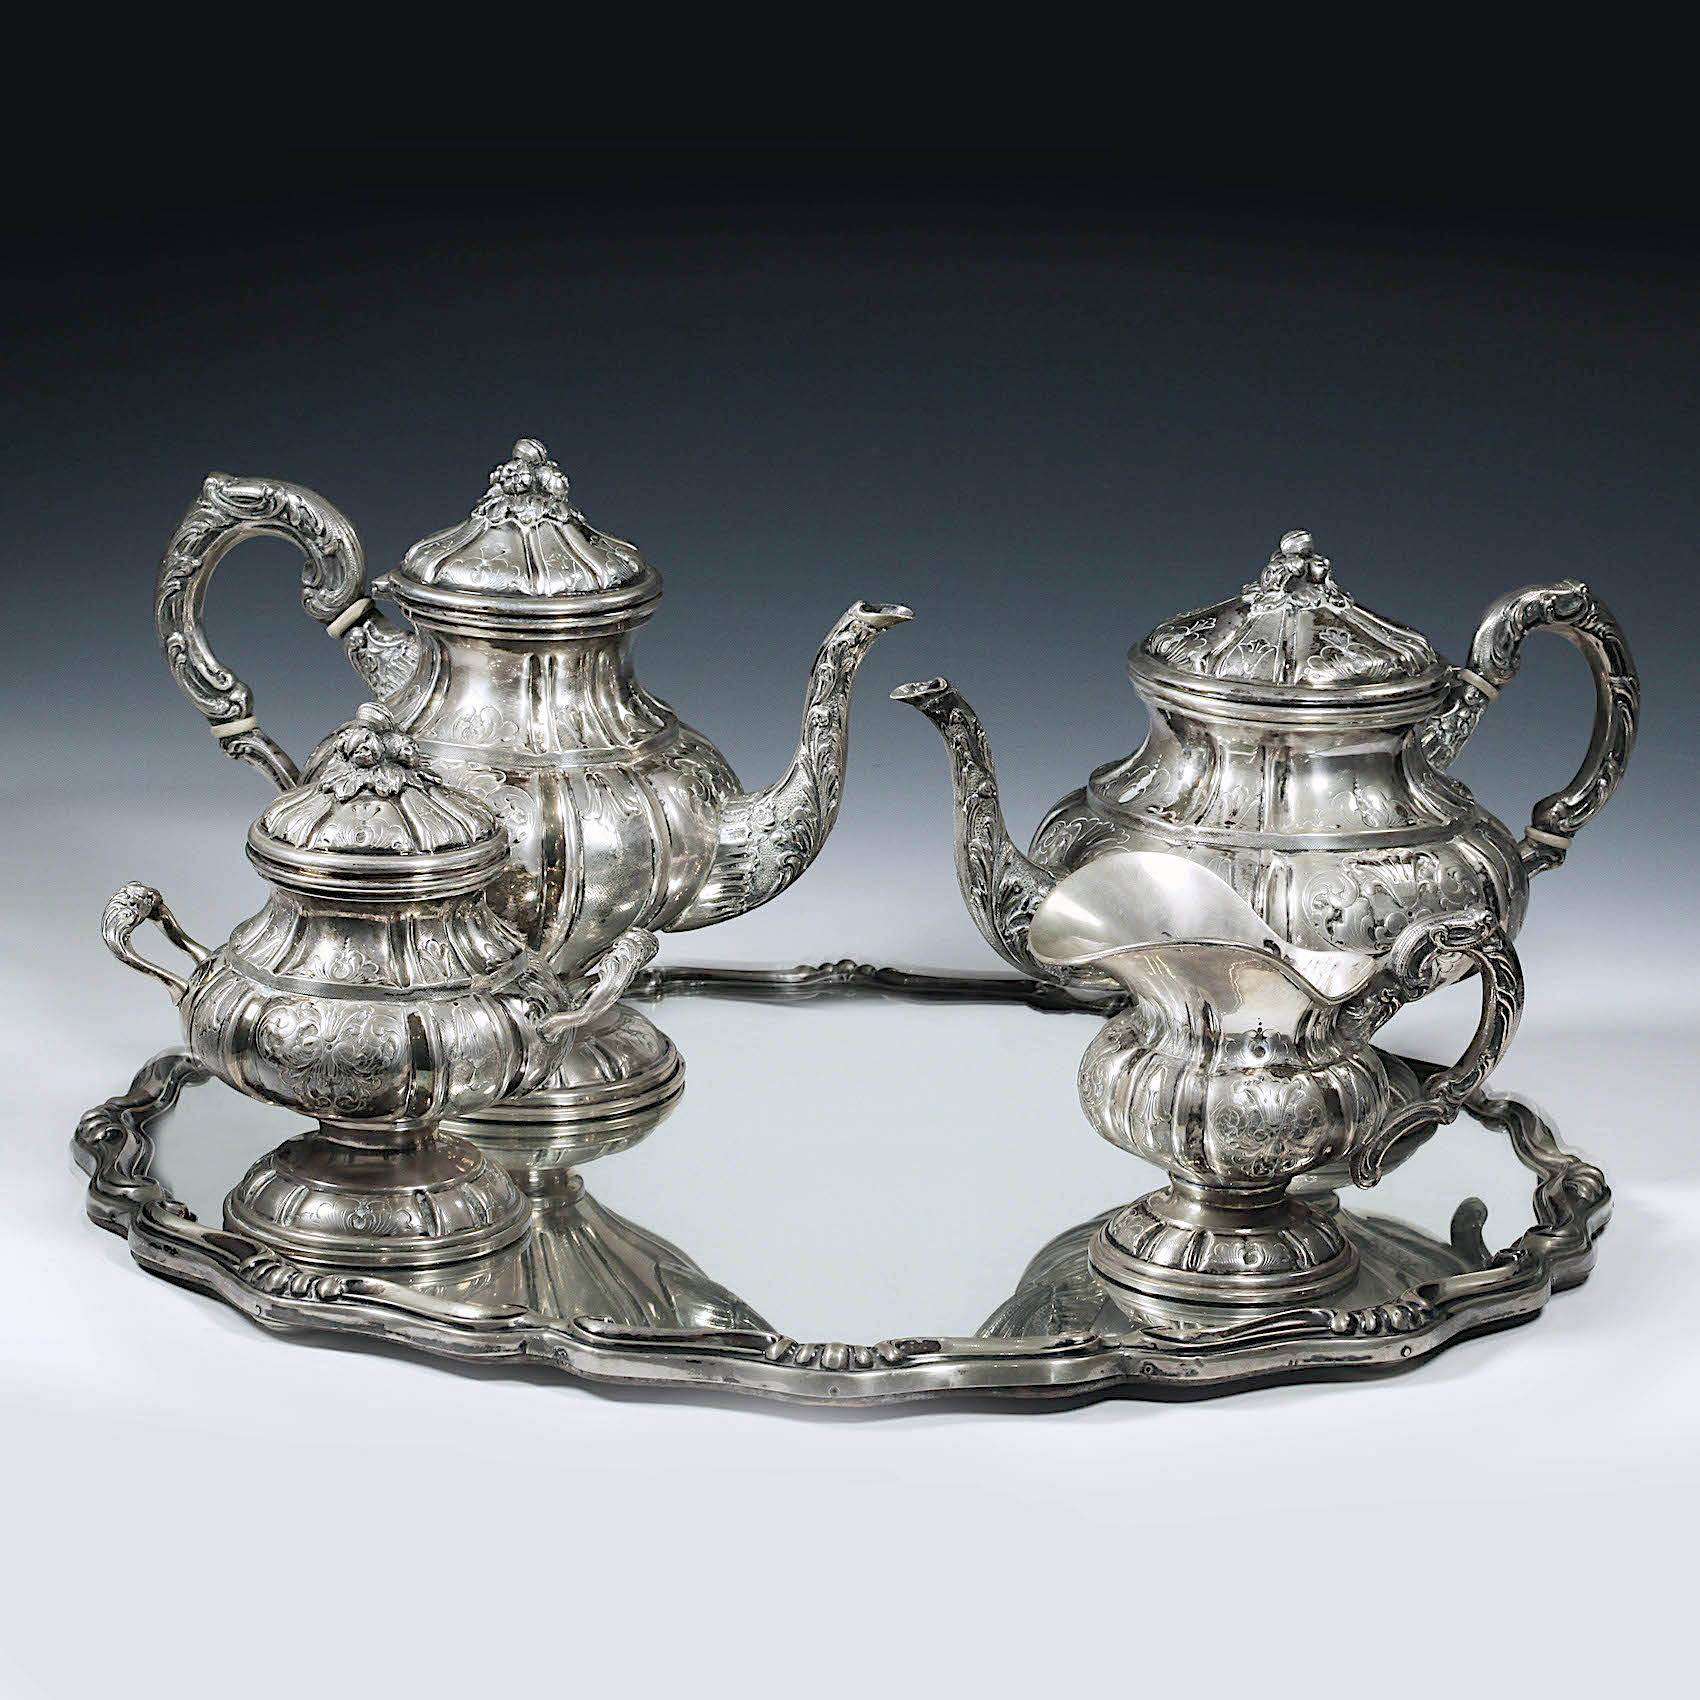 Сервиз серебряный чайно-кофейный из 5 предметов на зеркальном подносе